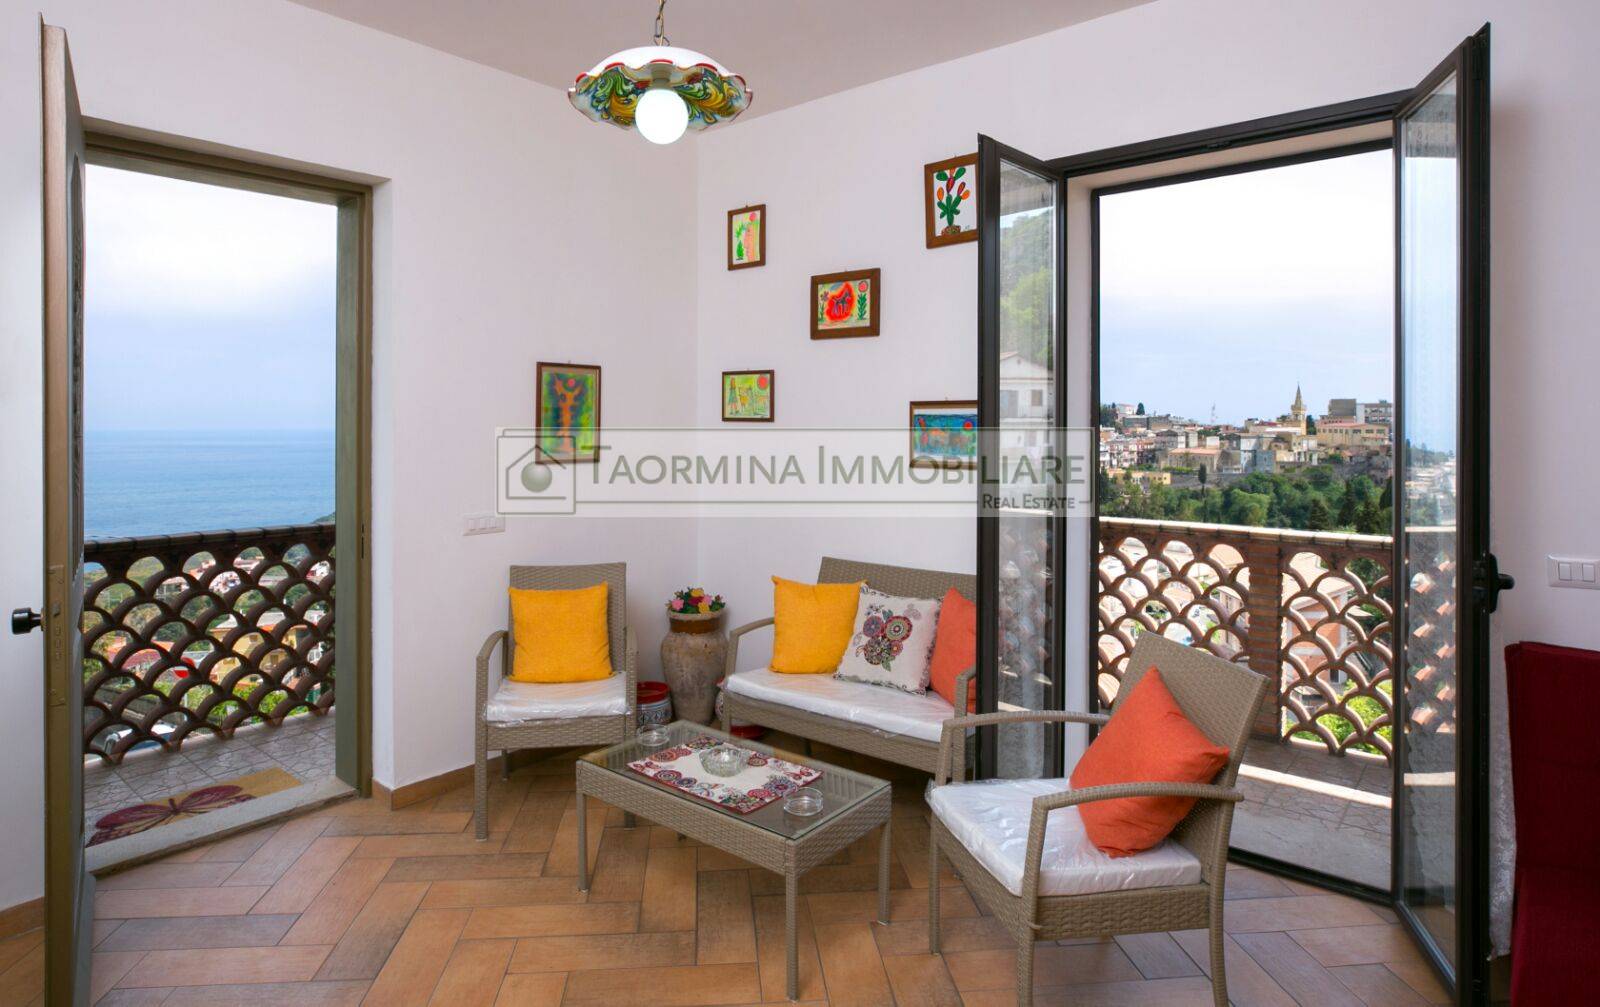 Vendo appartamento ottimo Taormina centro